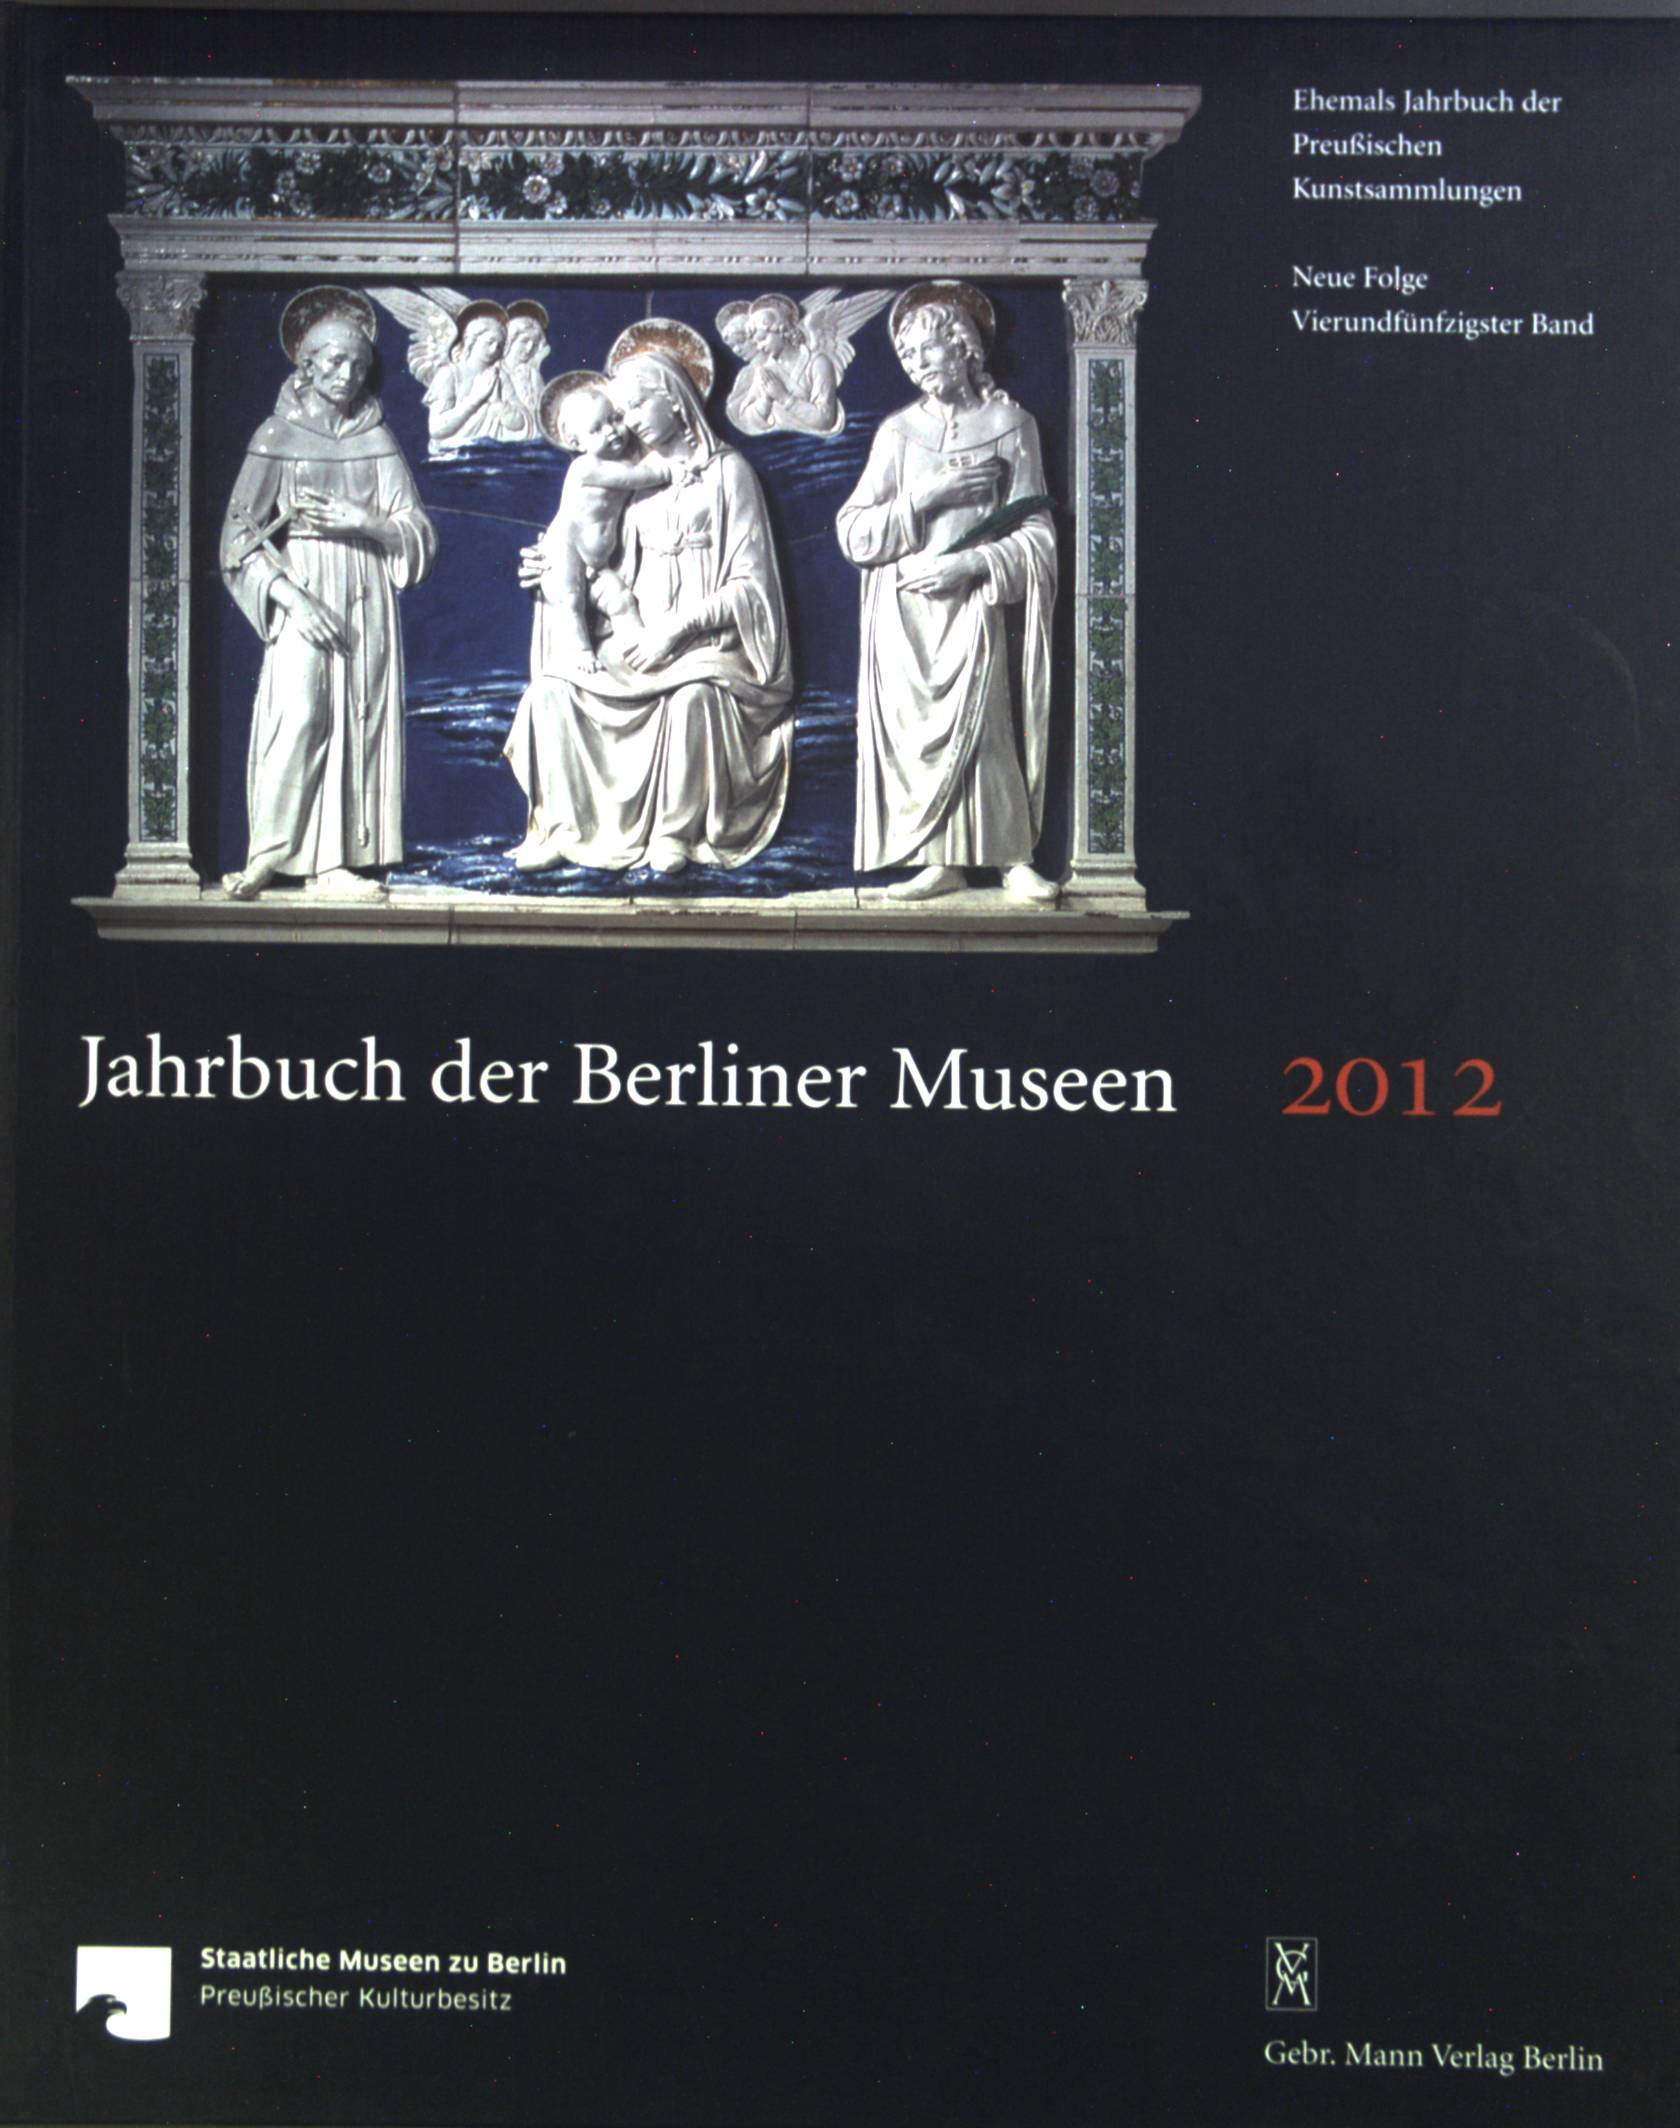 Jahrbuch der Berliner Museen. Jahrbuch der Preußischen Kunstsammlungen. Neue Folge. 2012. Bd. 54. - Staatliche, Museen zu Berlin